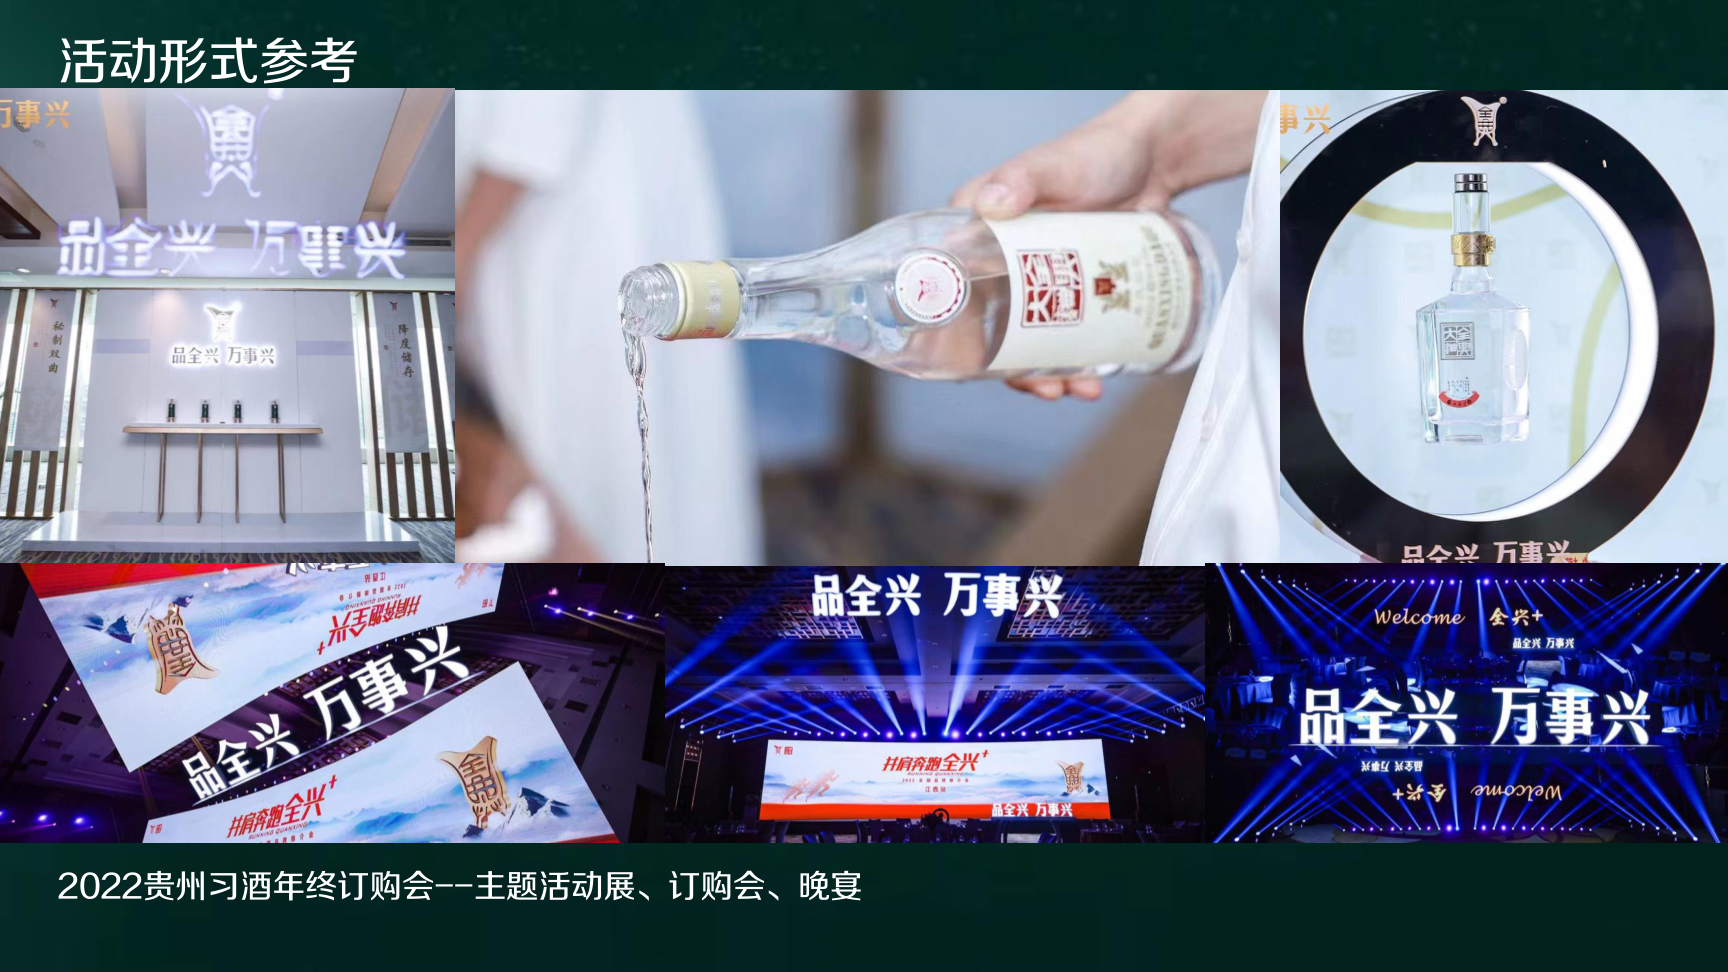 玥美——酒类品牌定制活动